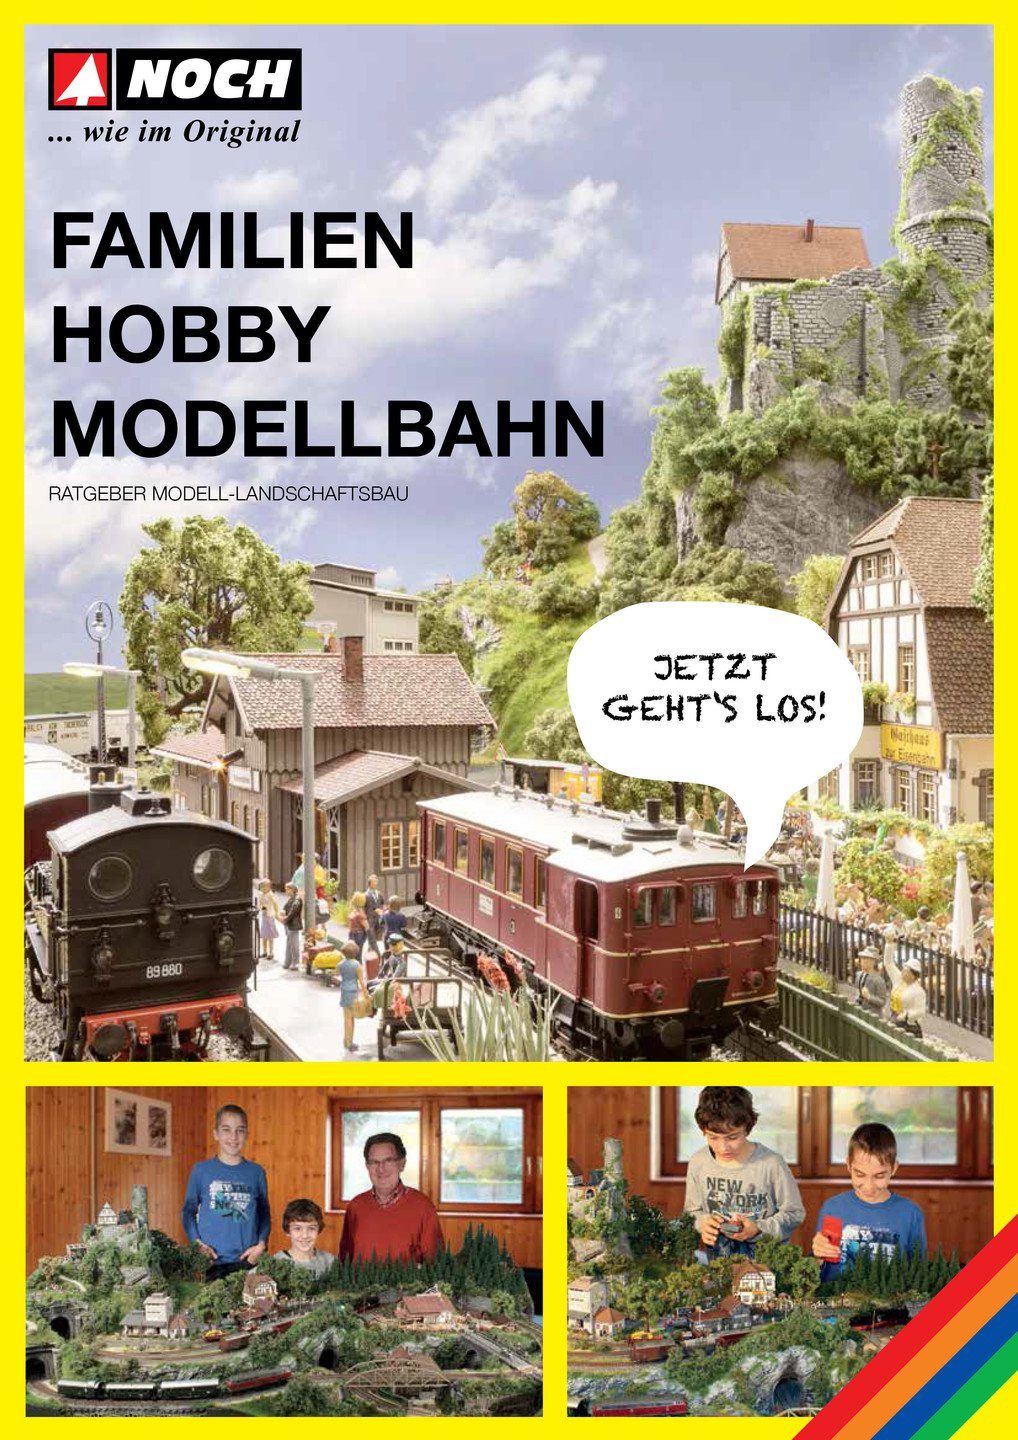 NOCH Modelleisenbahn-Spielunterlage NOCH, 71904, Ratgeber 'Familien-Hobby Modellbahn